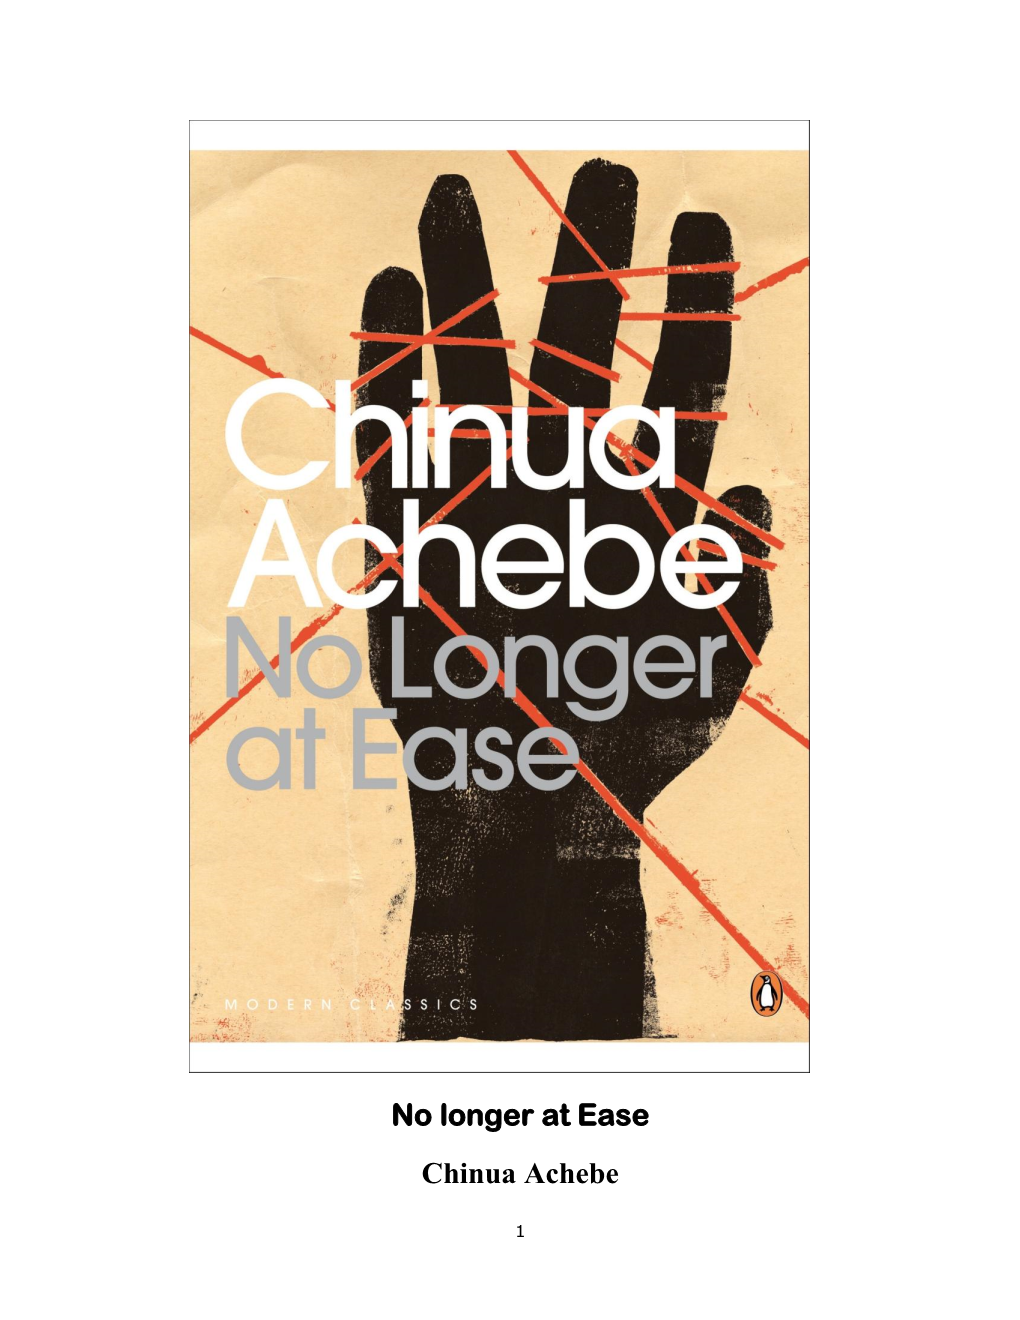 Chinua Achebe, No Longer at Ease